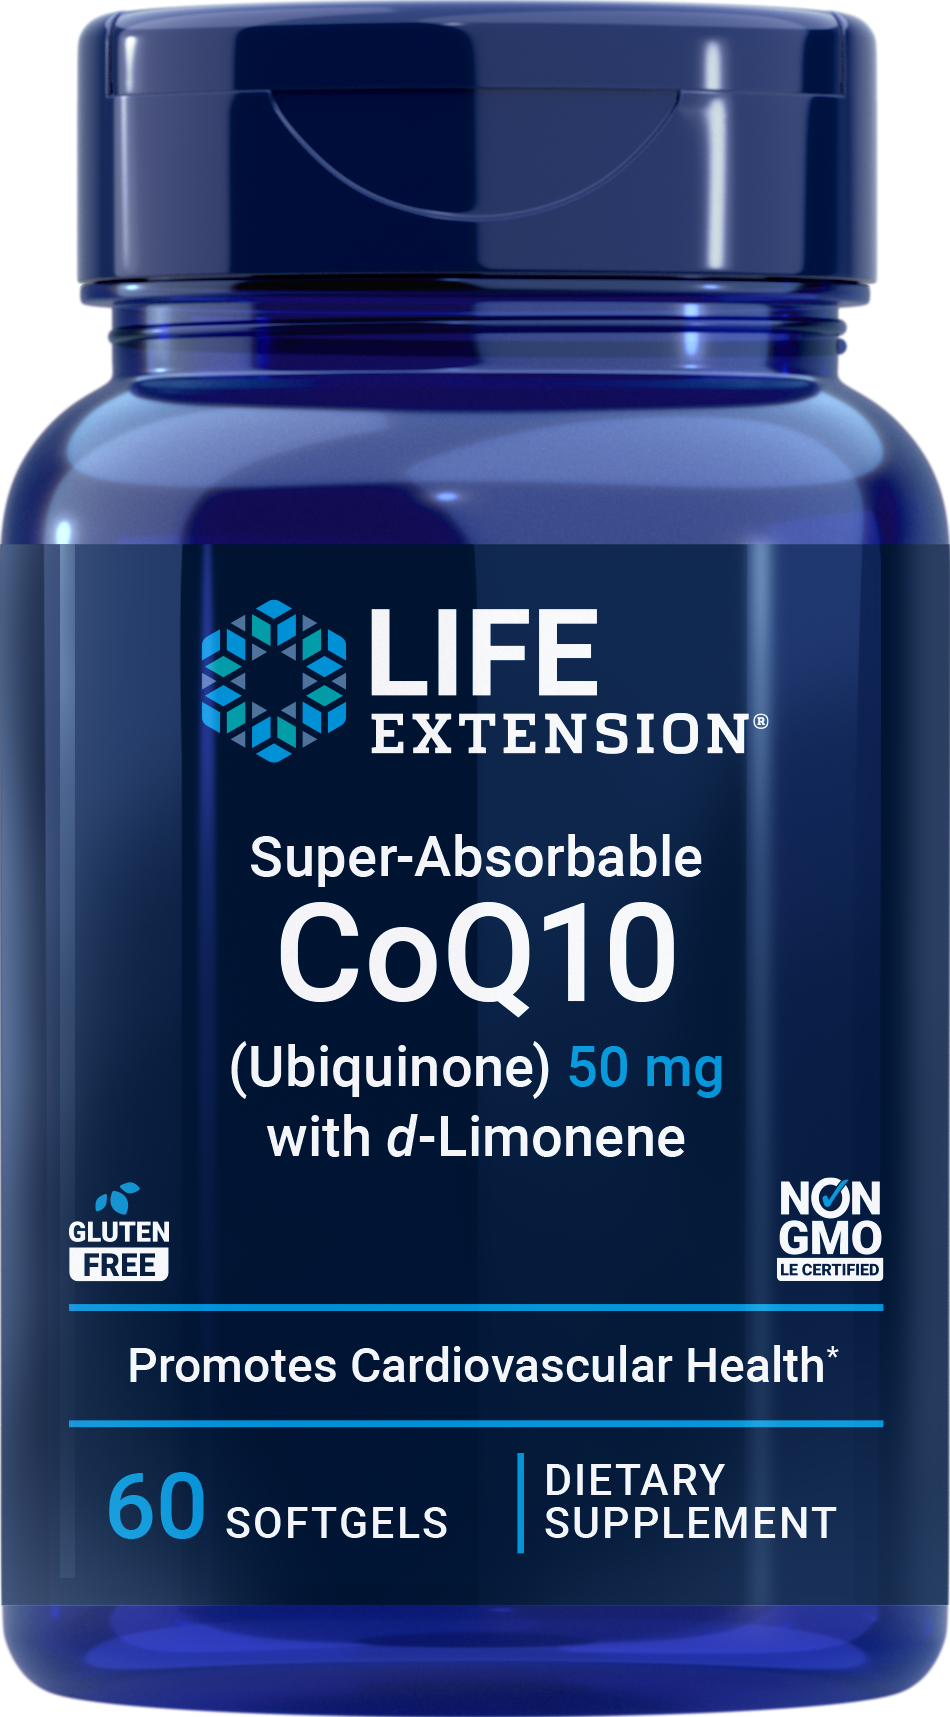 Super-Absorbable Ubiquinone CoQ10 with d-Limonene, 60 gels